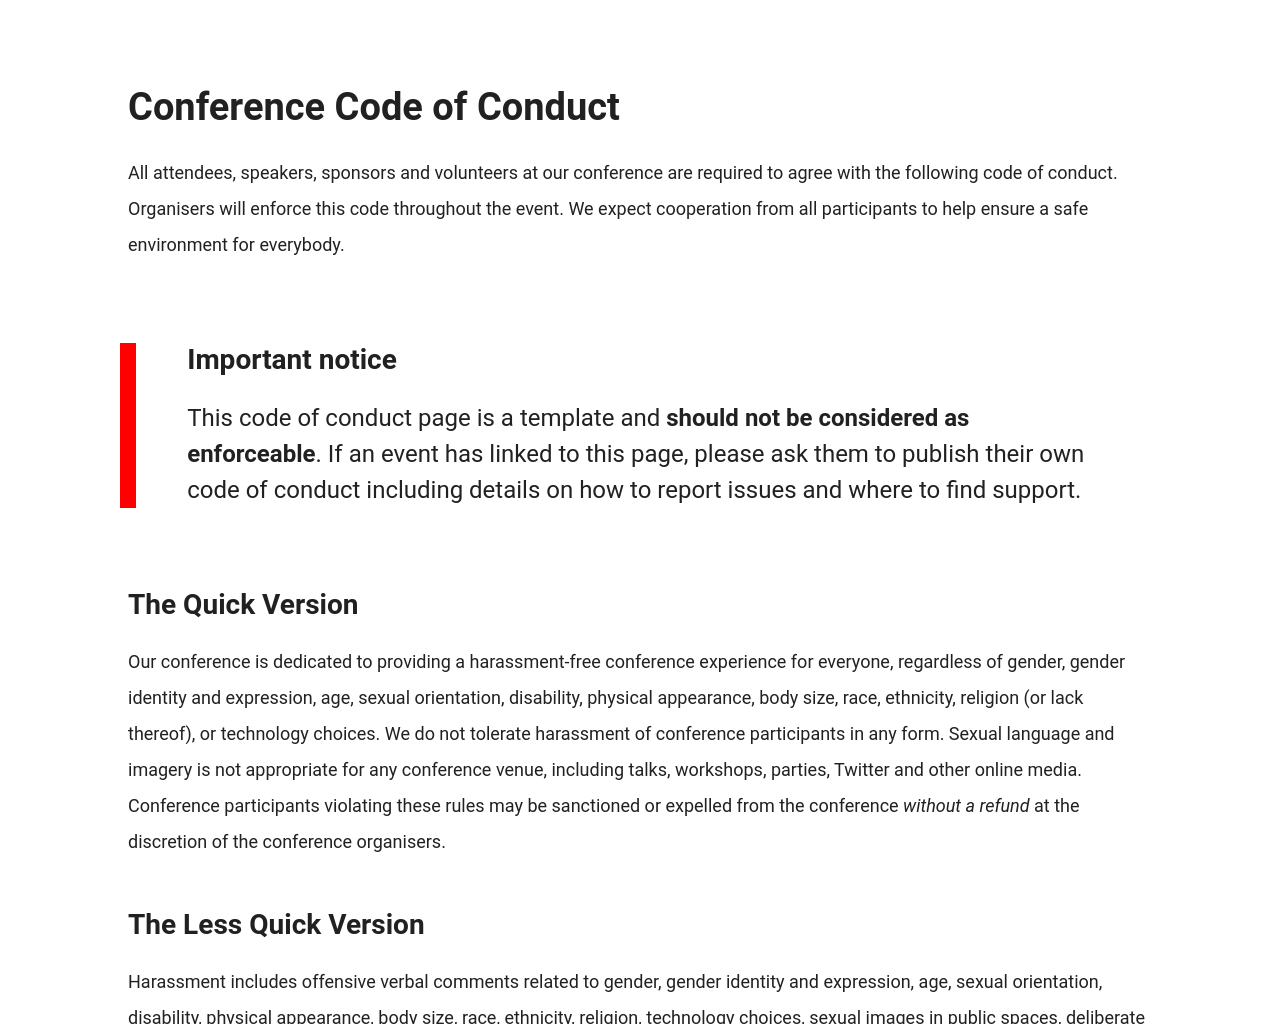 confcodeofconduct.com